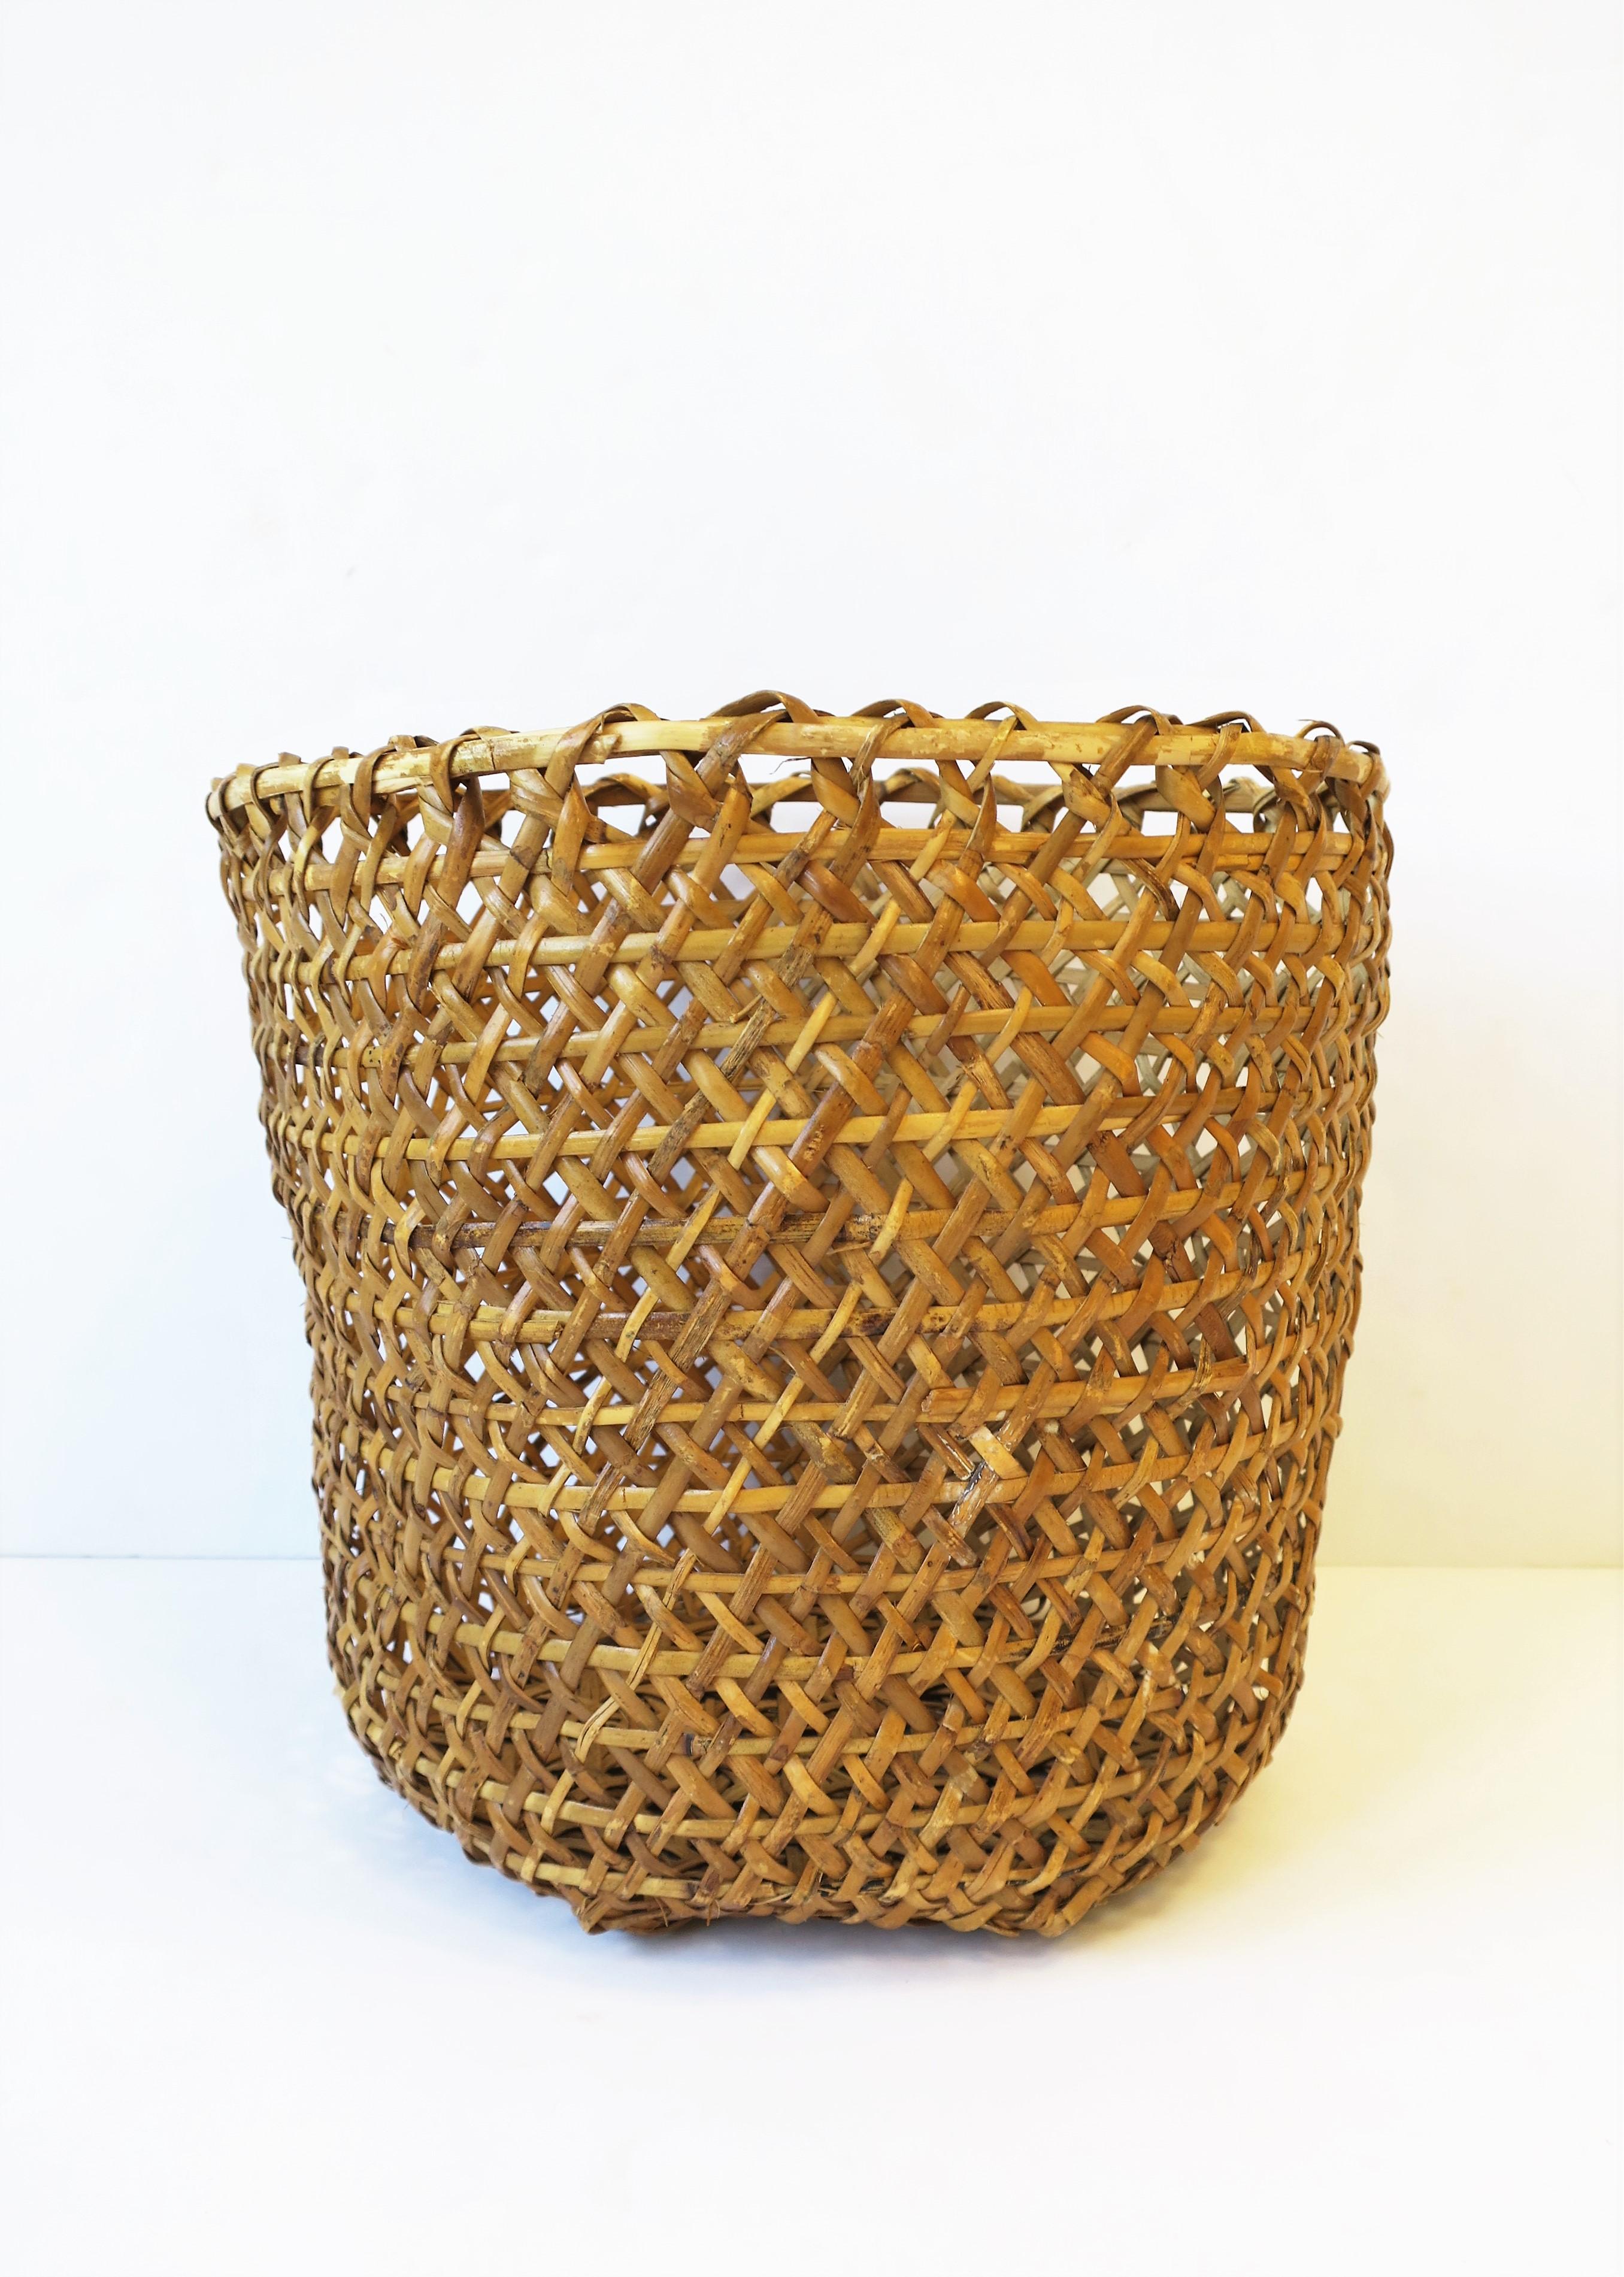 Vintage Wicker Basket Cachepot or Wastebasket Trash Can 2